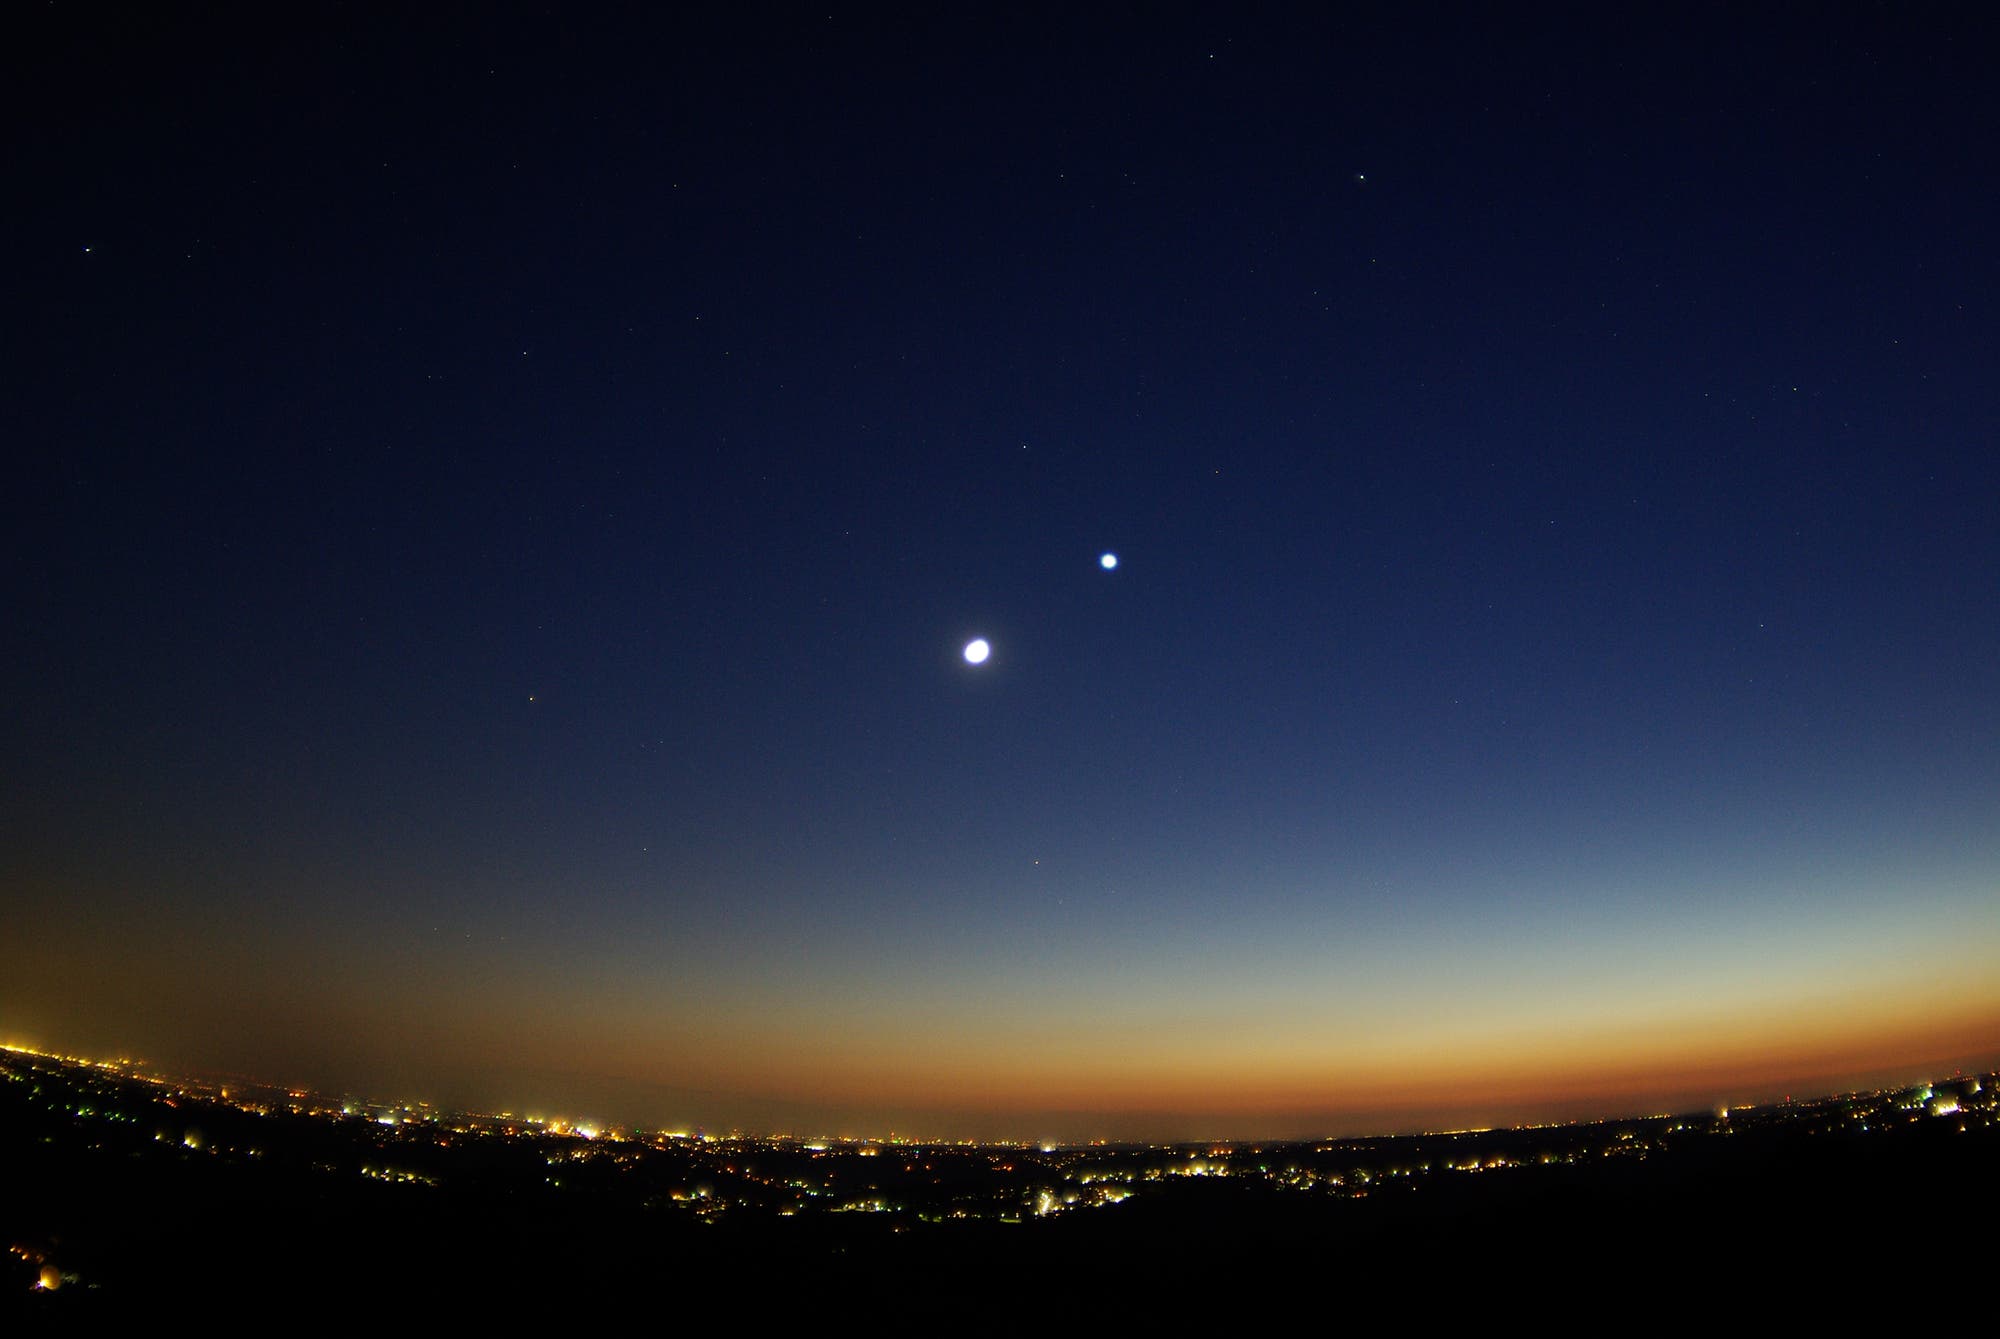 Mond bei Venus – Ausblick von der Sternwarte Remscheid